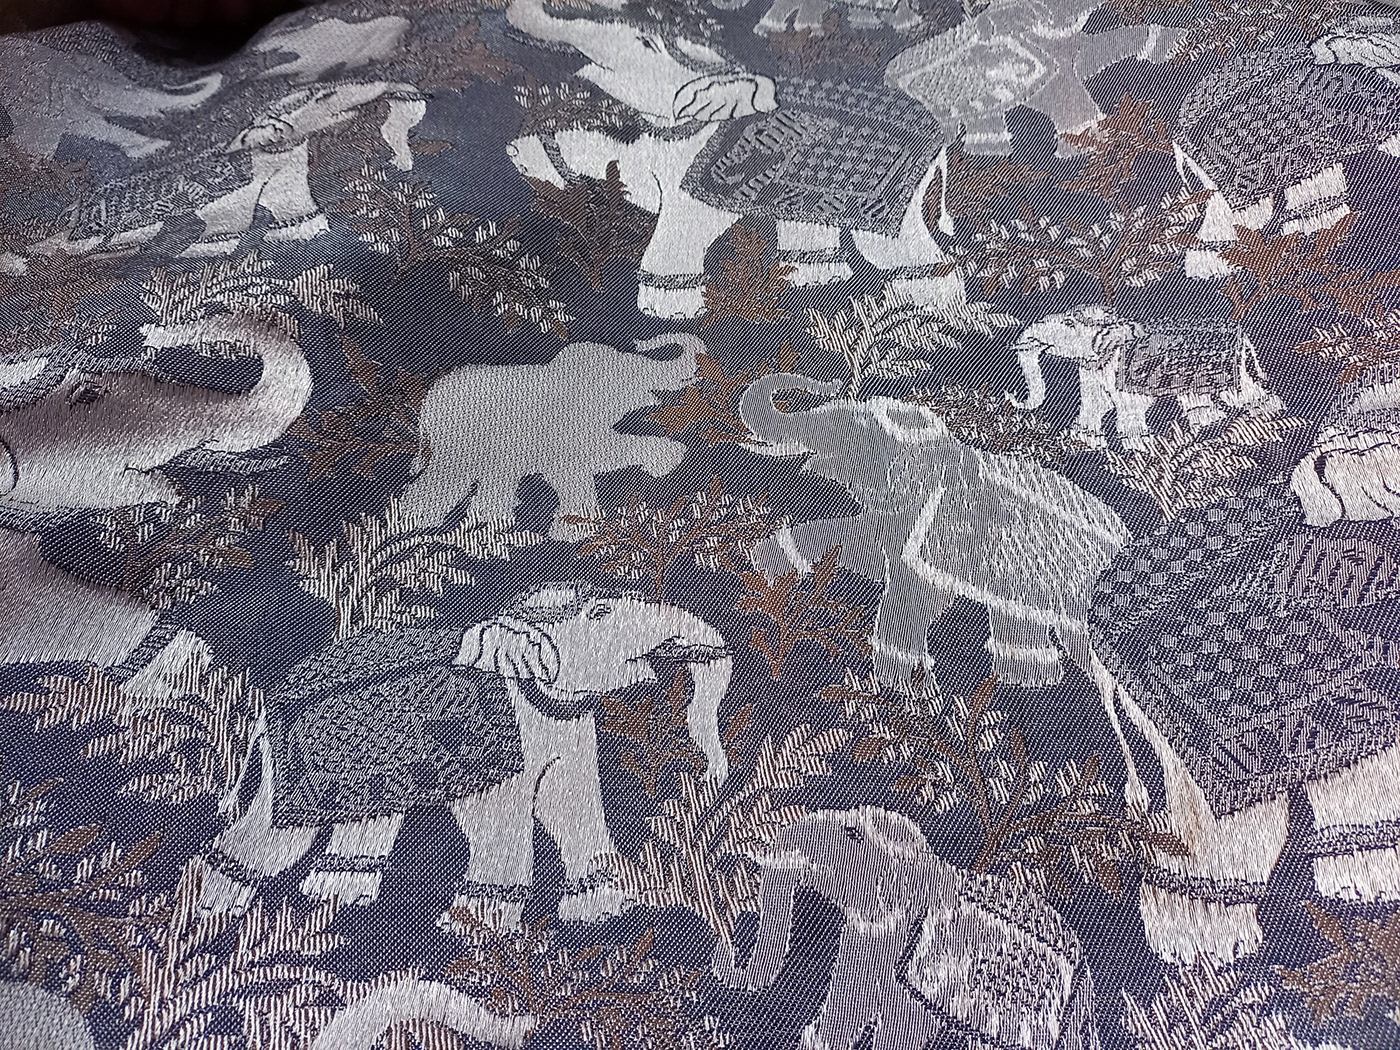 contemporary design fabric design jacquard upholstery elephant home decor jacquard design Motif Design woven fabric